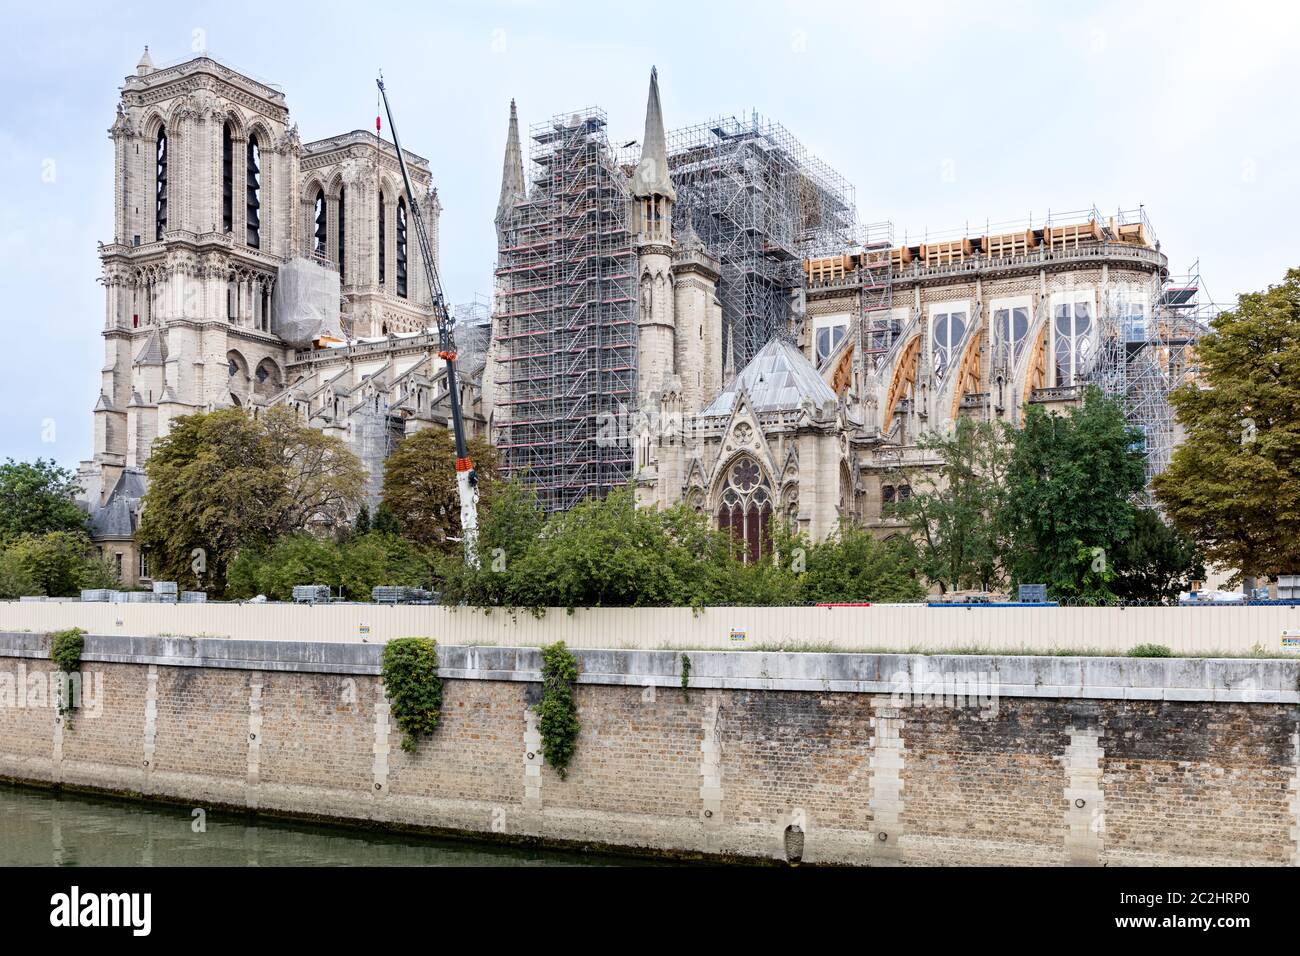 Travaux de réparation de la cathédrale notre-Dame endommagée par un incendie - 1 septembre 2019, Paris, Ile-de-France, France Banque D'Images